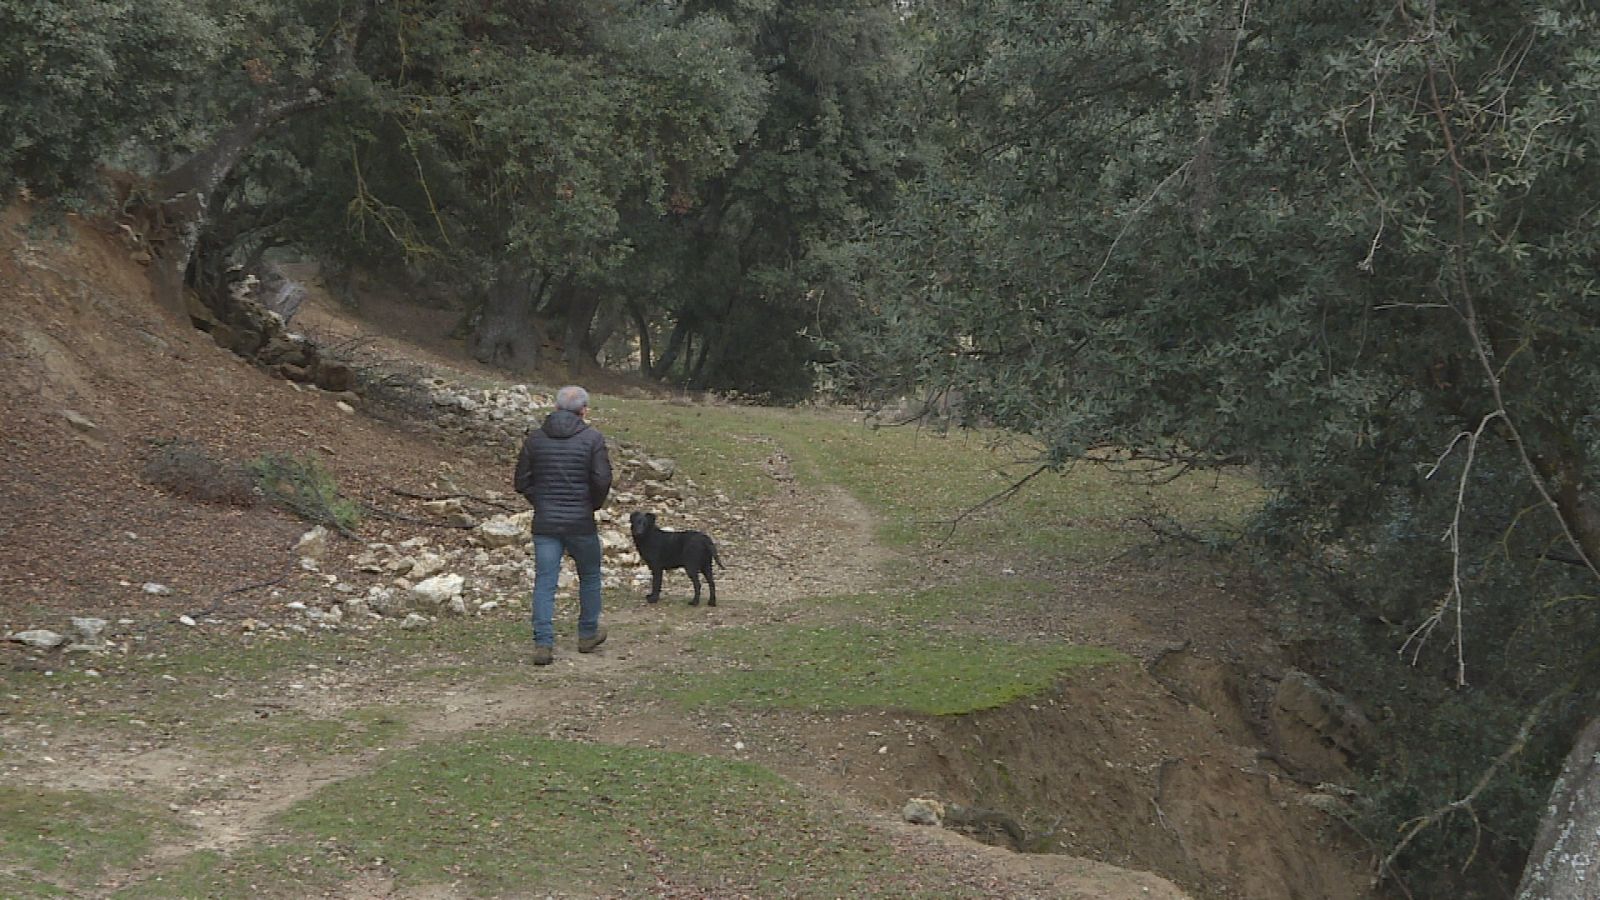 El único habitante de Huecos de Bañares camina de espaldas junto a su perro por la sierra de Segura.